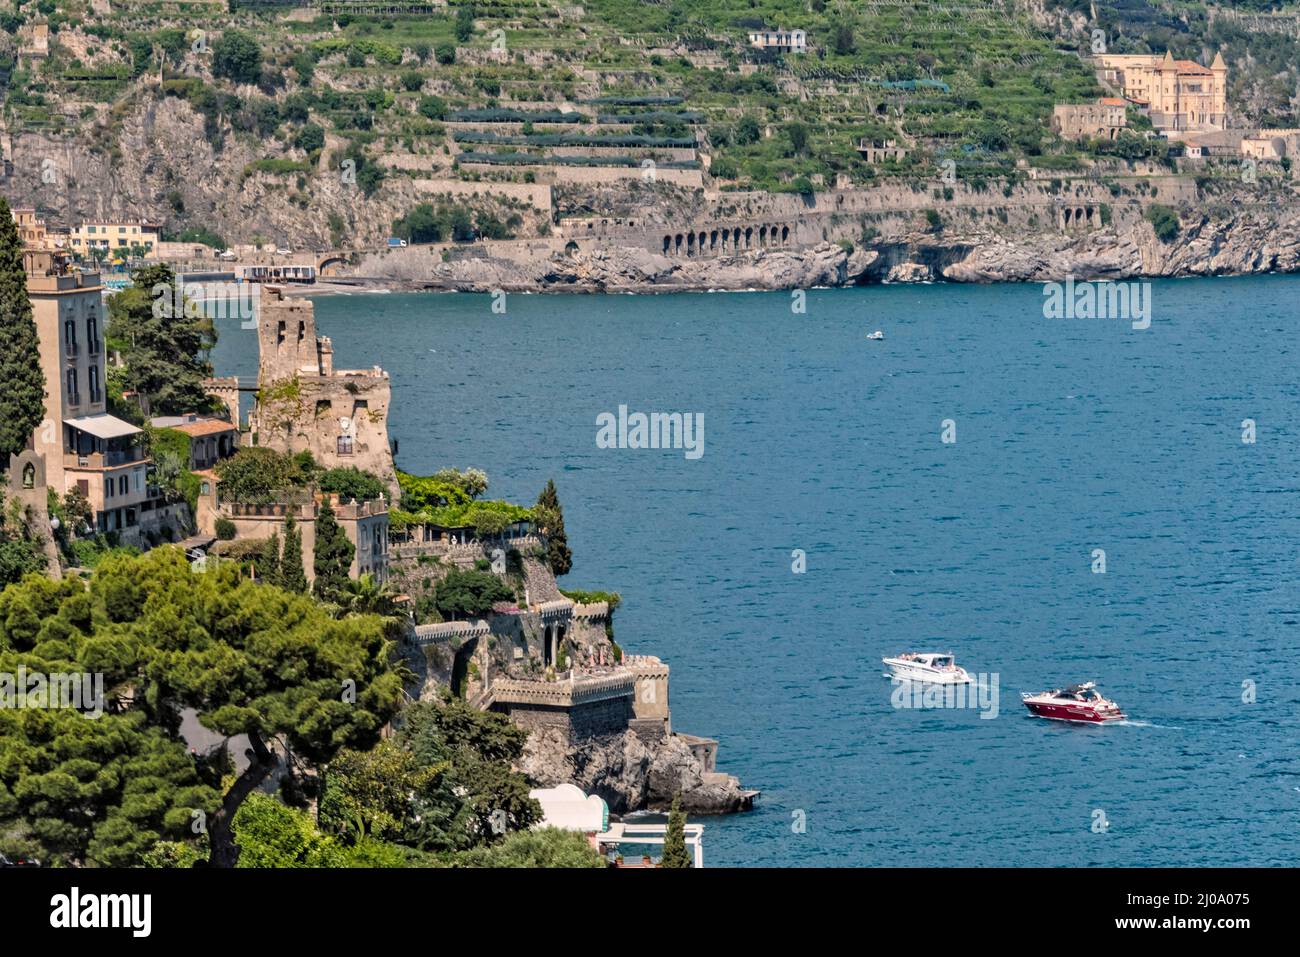 Amalfi le long de la côte amalfitaine, province de Salerne, région de Compania, Italie Banque D'Images